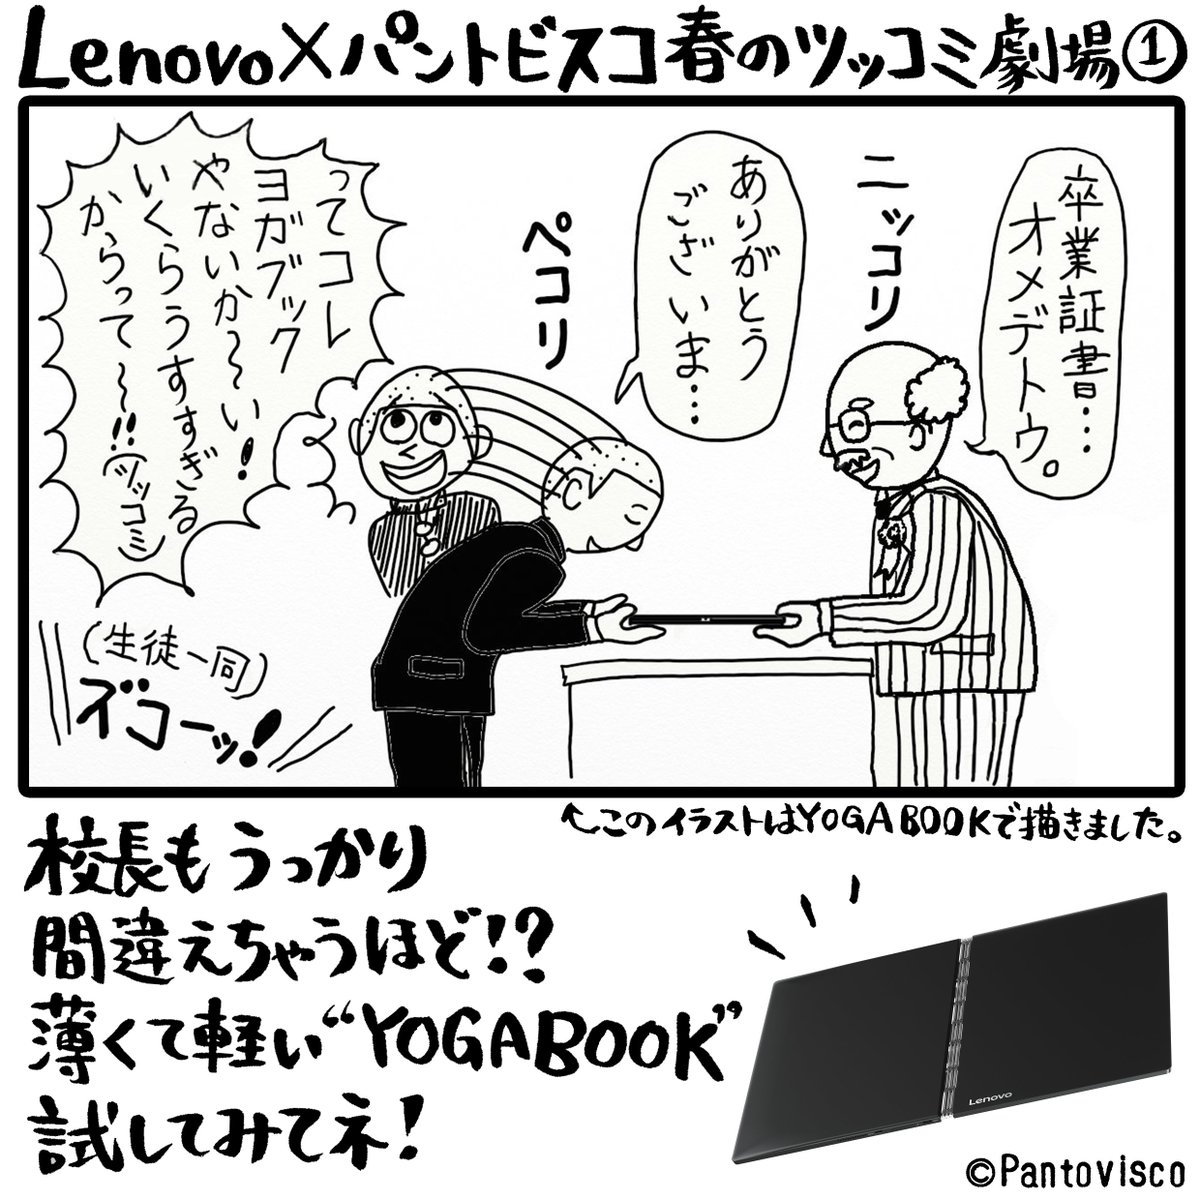 Lenovo Japan Pa Twitter Lenovo パントビスコ 春のツッコミ劇場 その１ 卒業させてください 卒業式 ないない Yogabook Yogabookでイラスト描いてみた